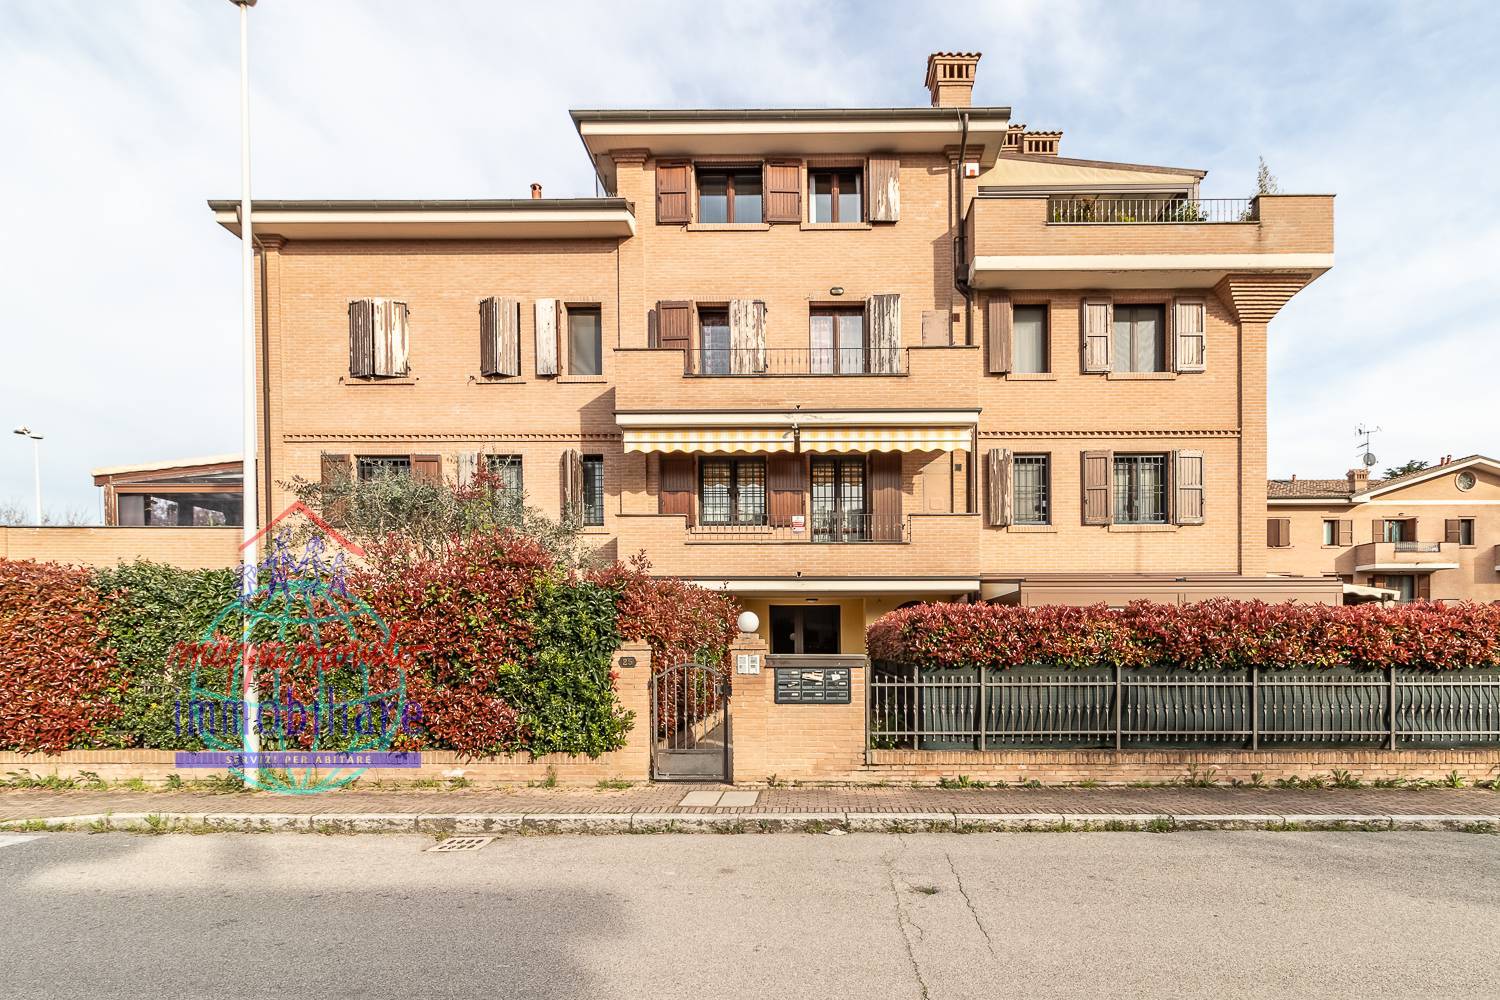 Appartamento con terrazzo, Sala Bolognese osteria nuova